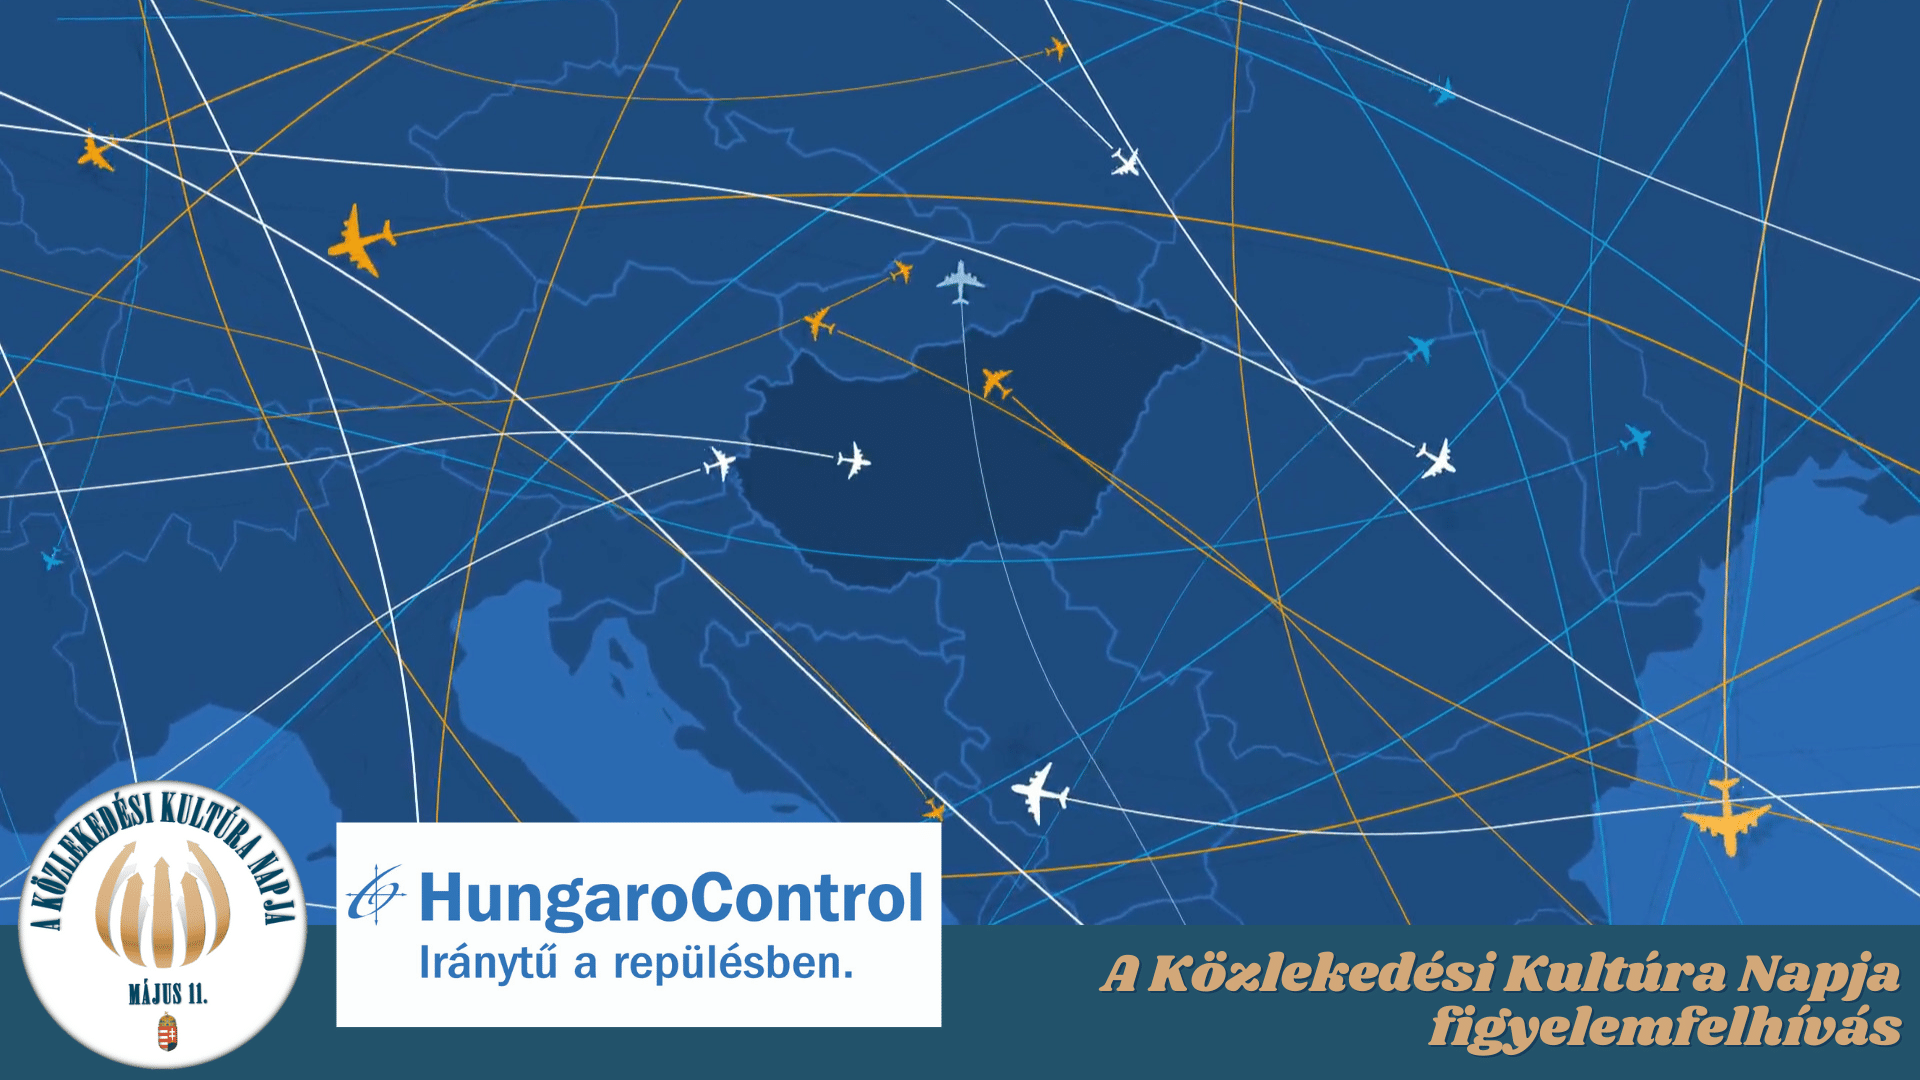 Közlekedési Kultúra Napja figyelemfelhívás – HungaroControl